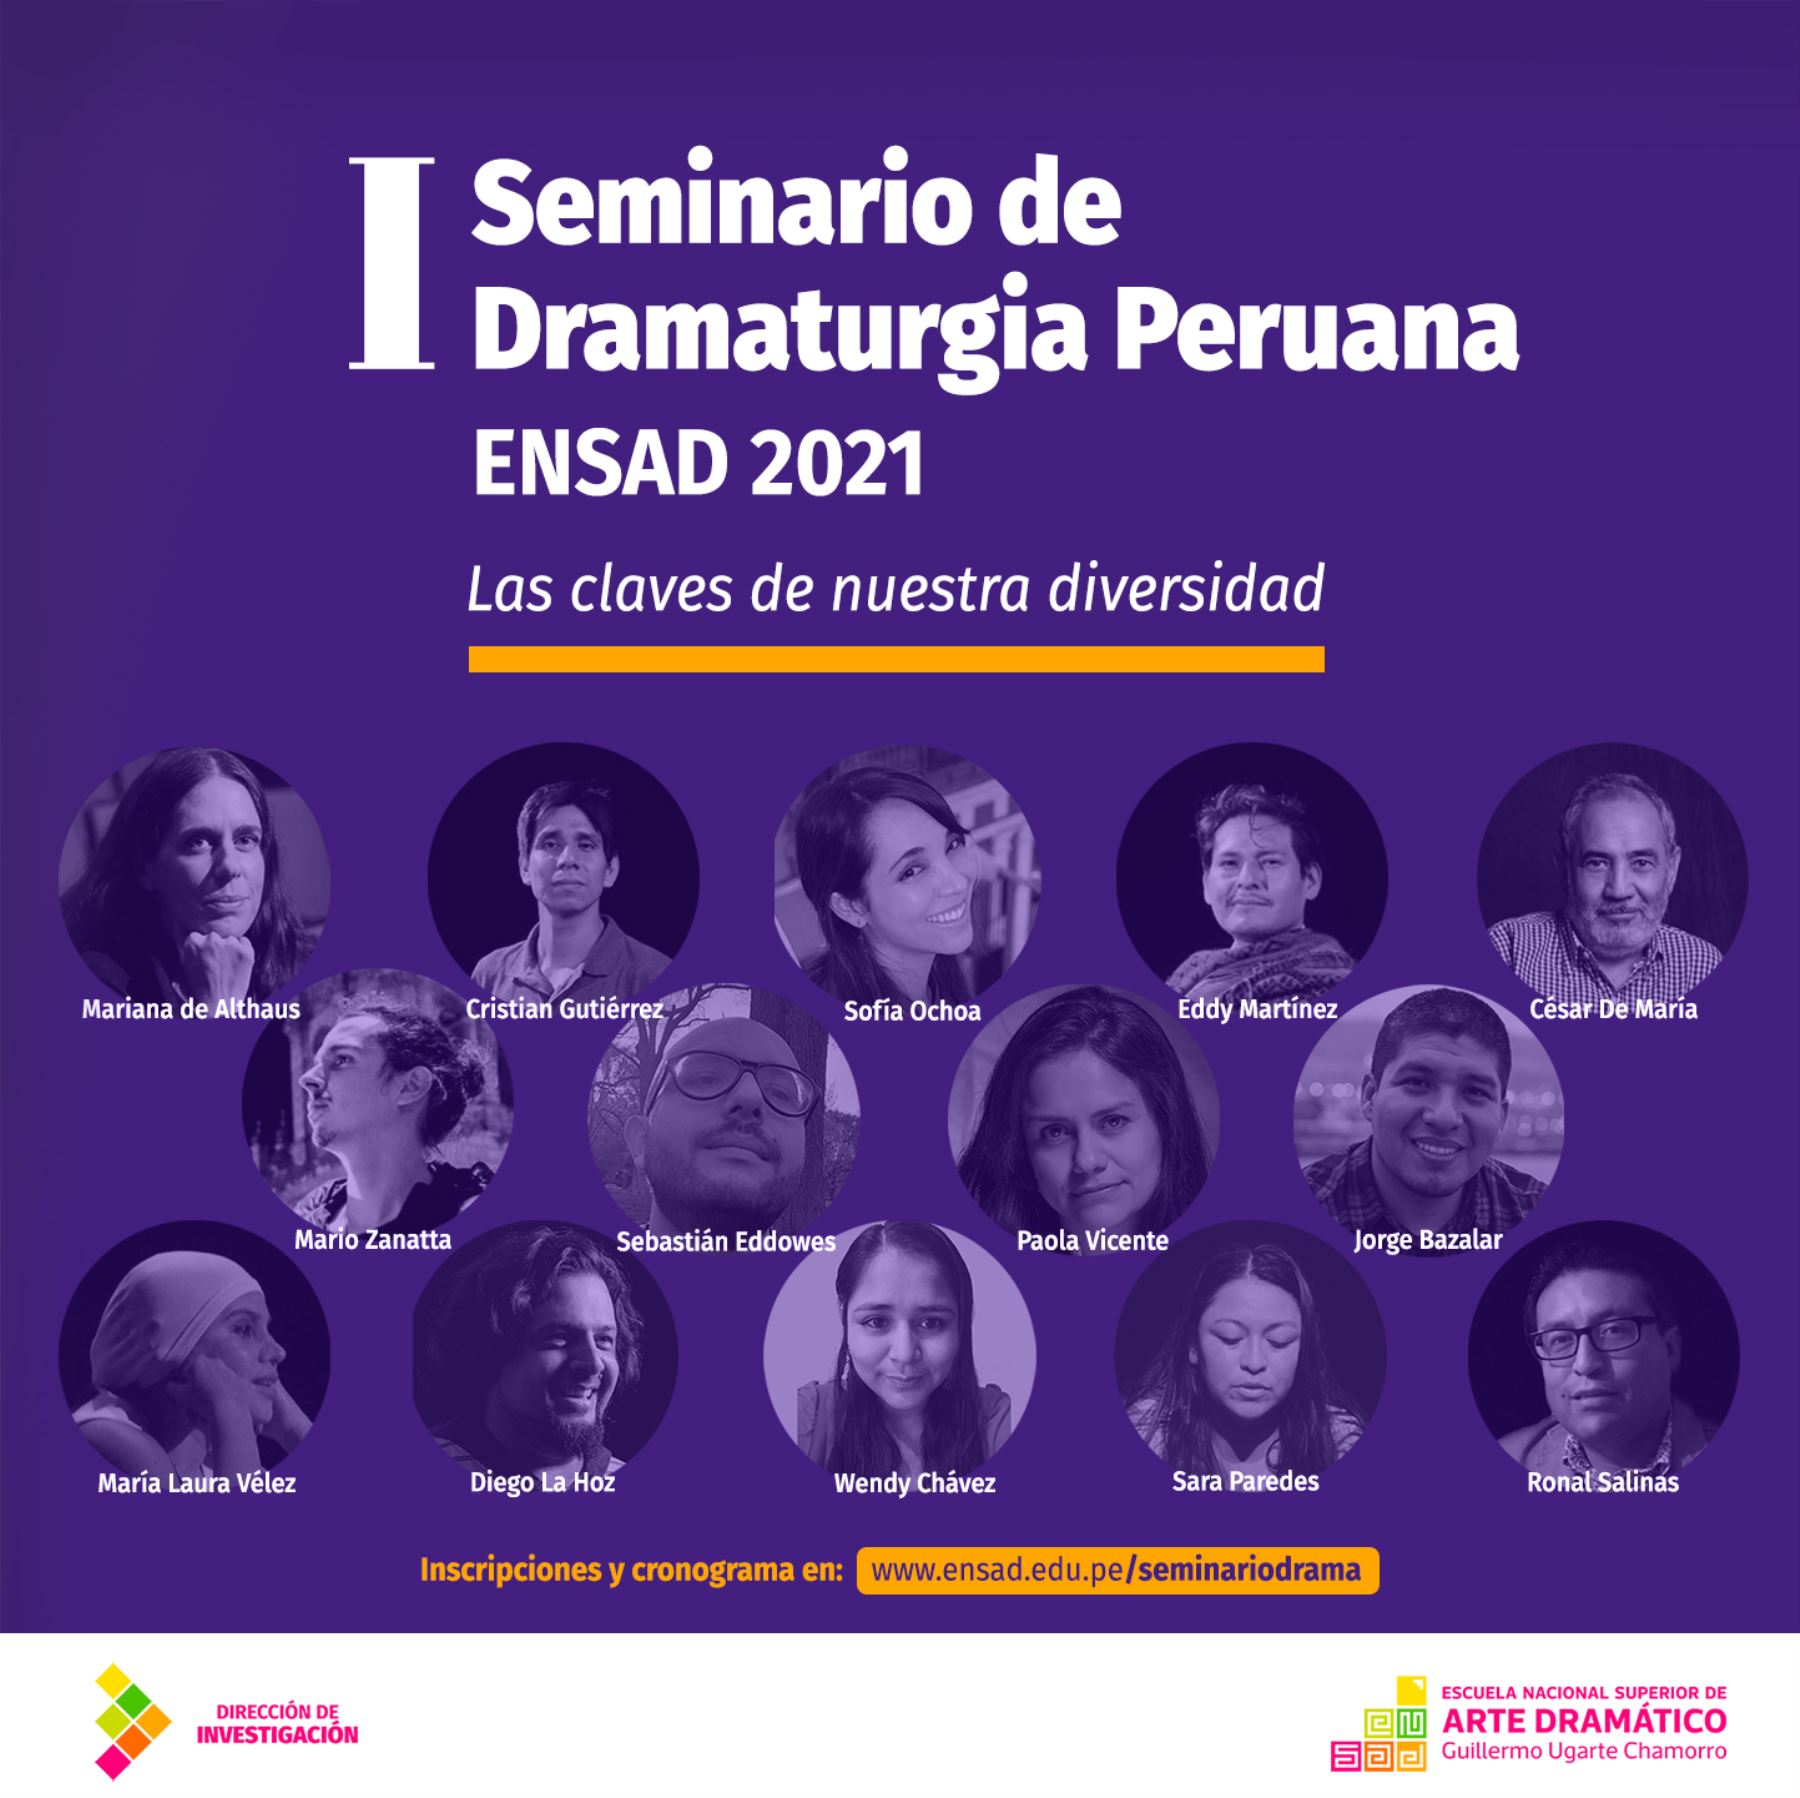 I Seminario de Dramaturgia peruana Ensad 2021: Las claves de nuestra diversidad.